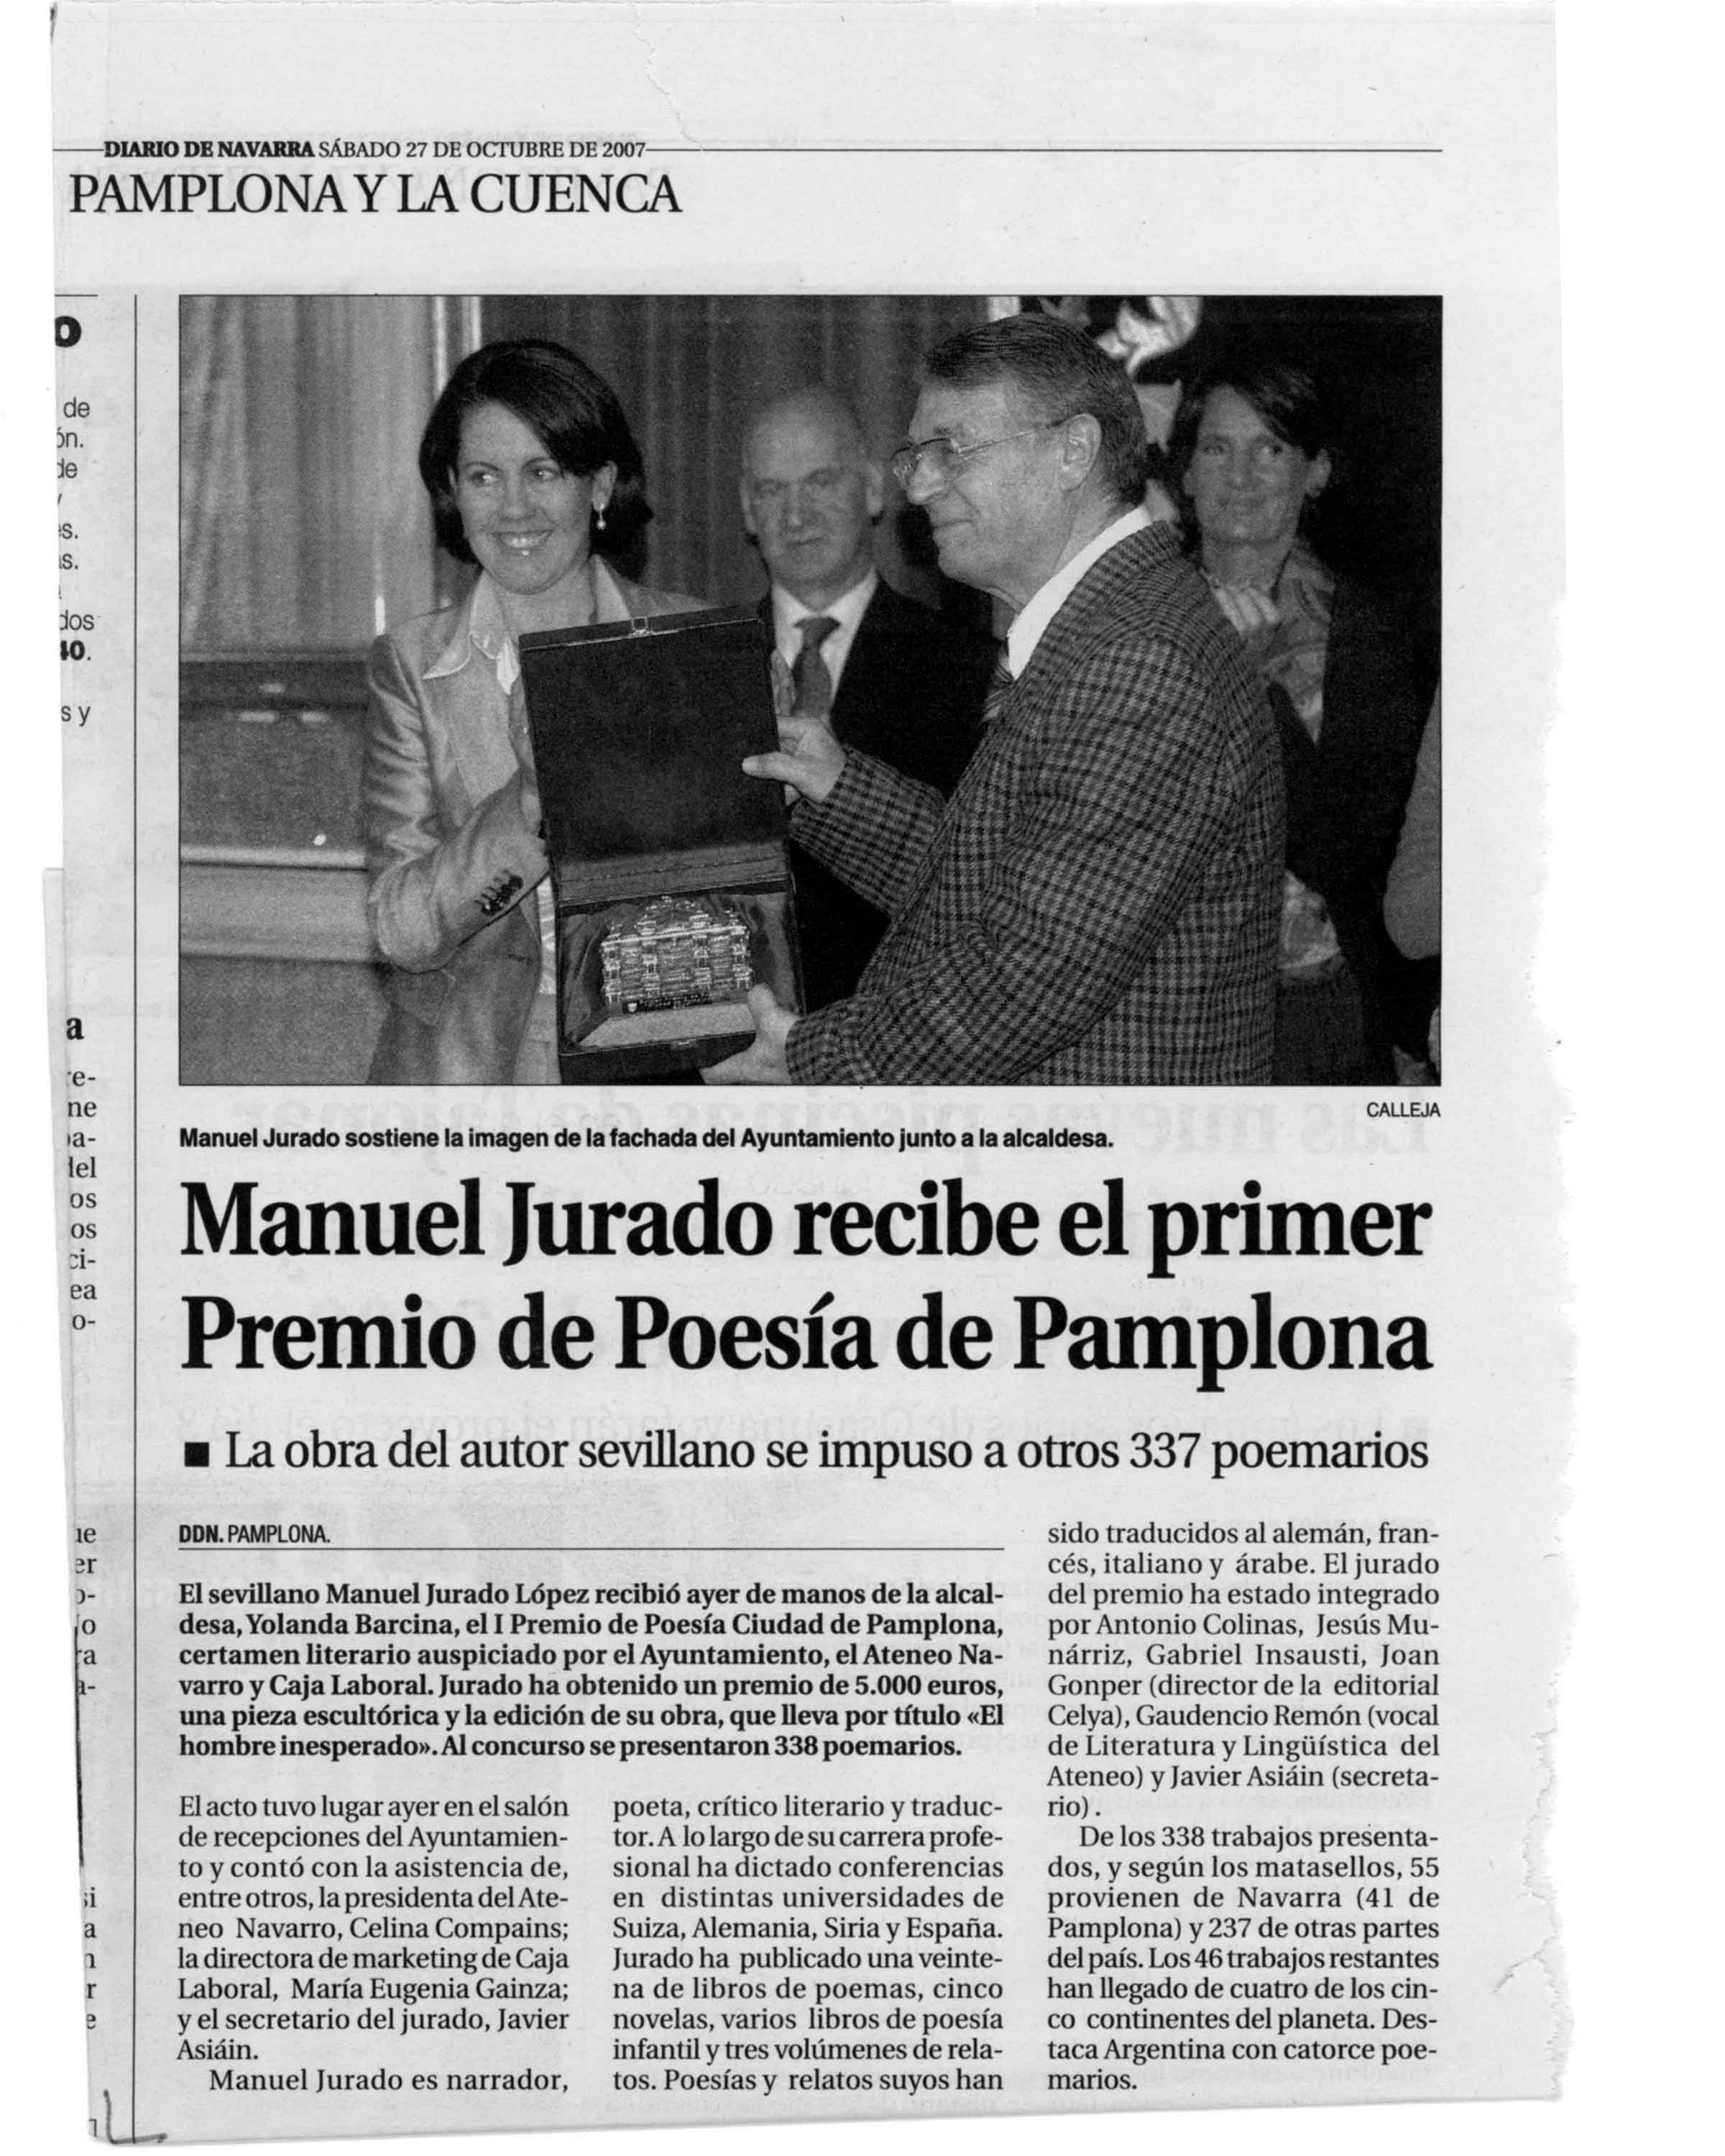 DIARIO DE PAMPLONA: Manuel Jurado, I Premio de Poesía 